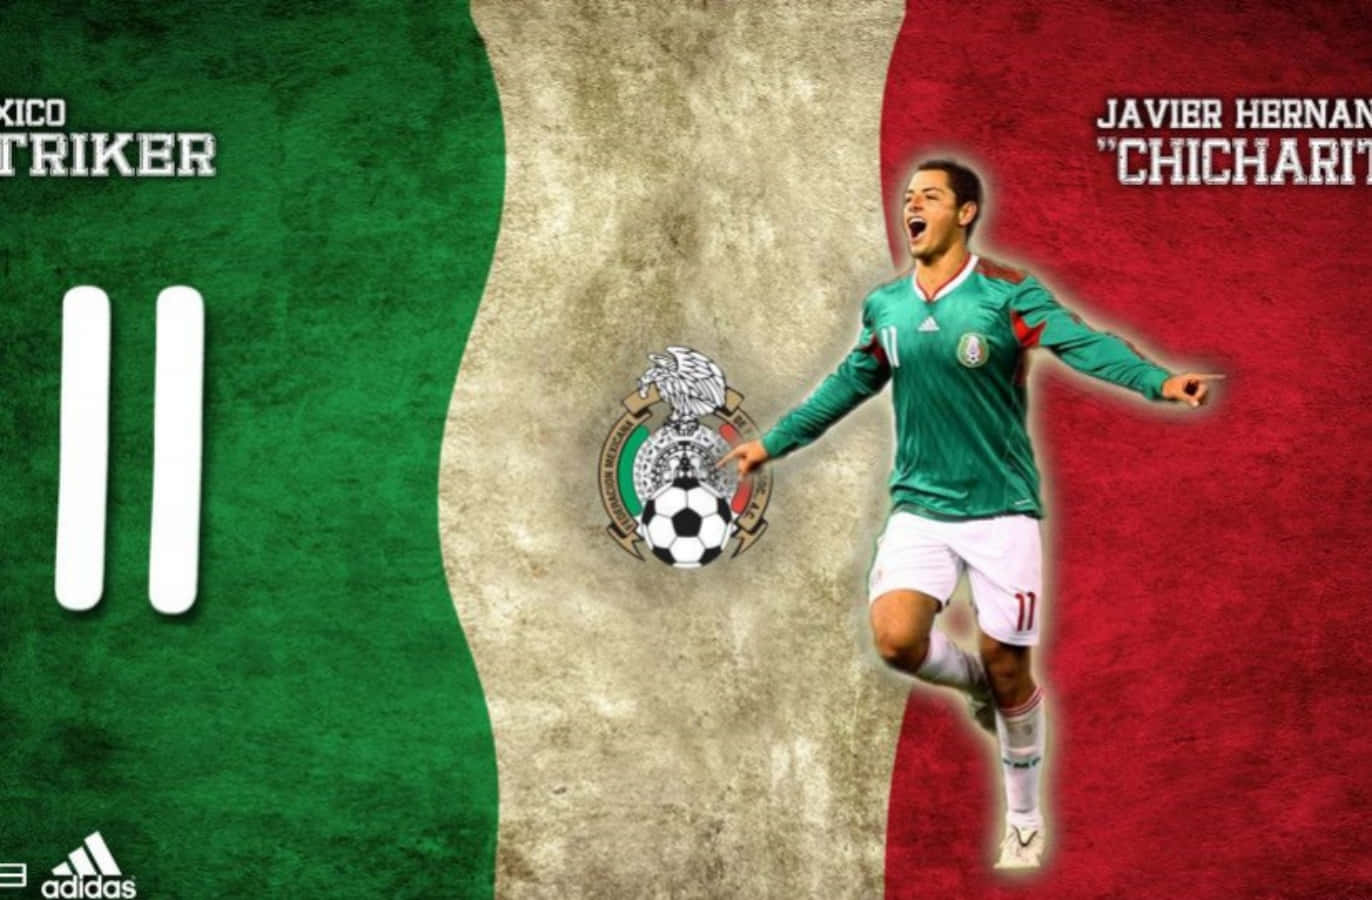 Ikonischespieler Der Mexikanischen Fußballnationalmannschaft Wallpaper